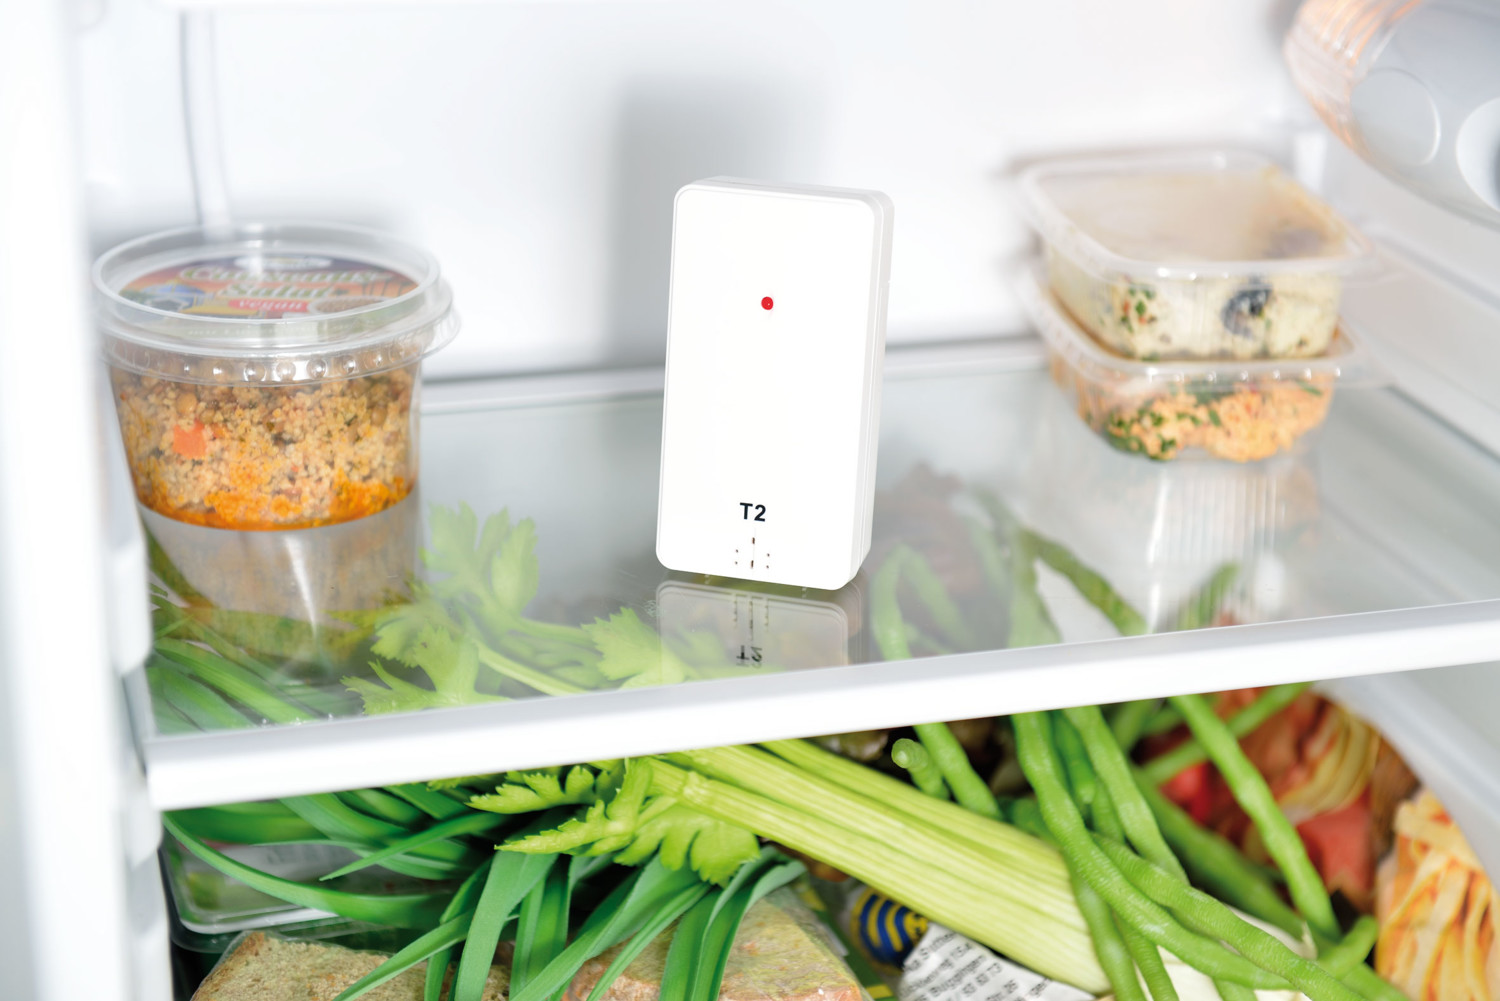 Accessoire Réfrigérateur et Congélateur GENERIQUE Thermomètre digital sans  fil pour réfrigérateur et congélateur avec 2 capteurs